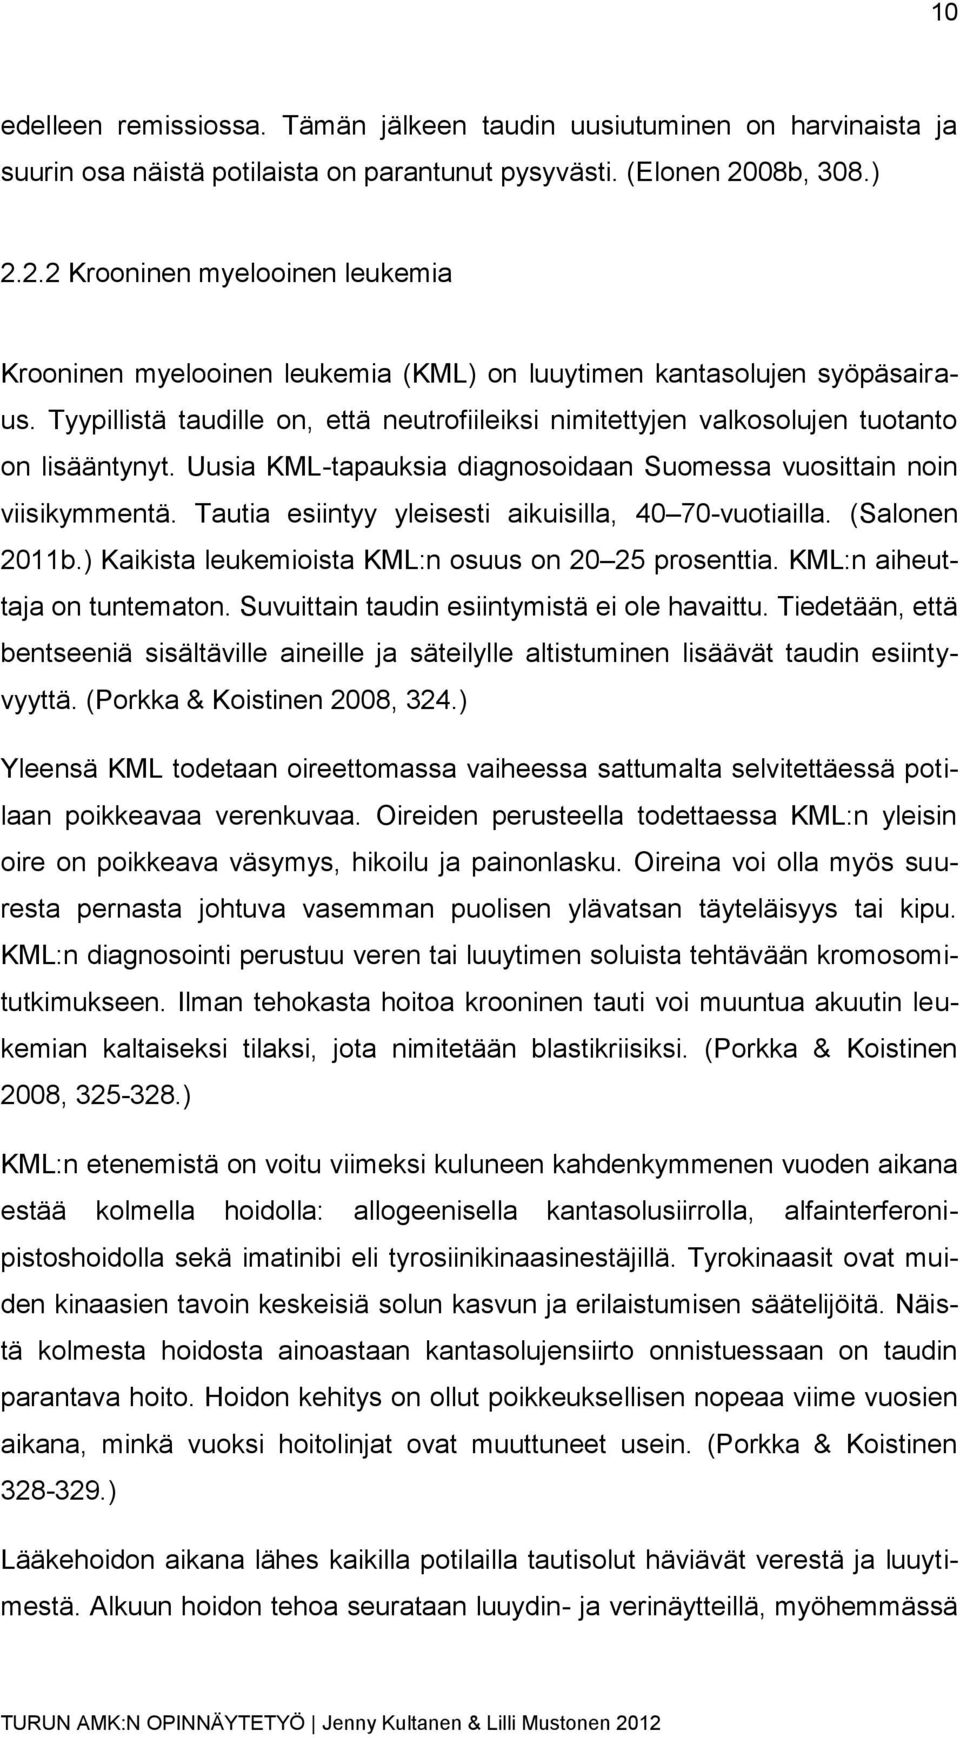 Tyypillistä taudille on, että neutrofiileiksi nimitettyjen valkosolujen tuotanto on lisääntynyt. Uusia KML-tapauksia diagnosoidaan Suomessa vuosittain noin viisikymmentä.